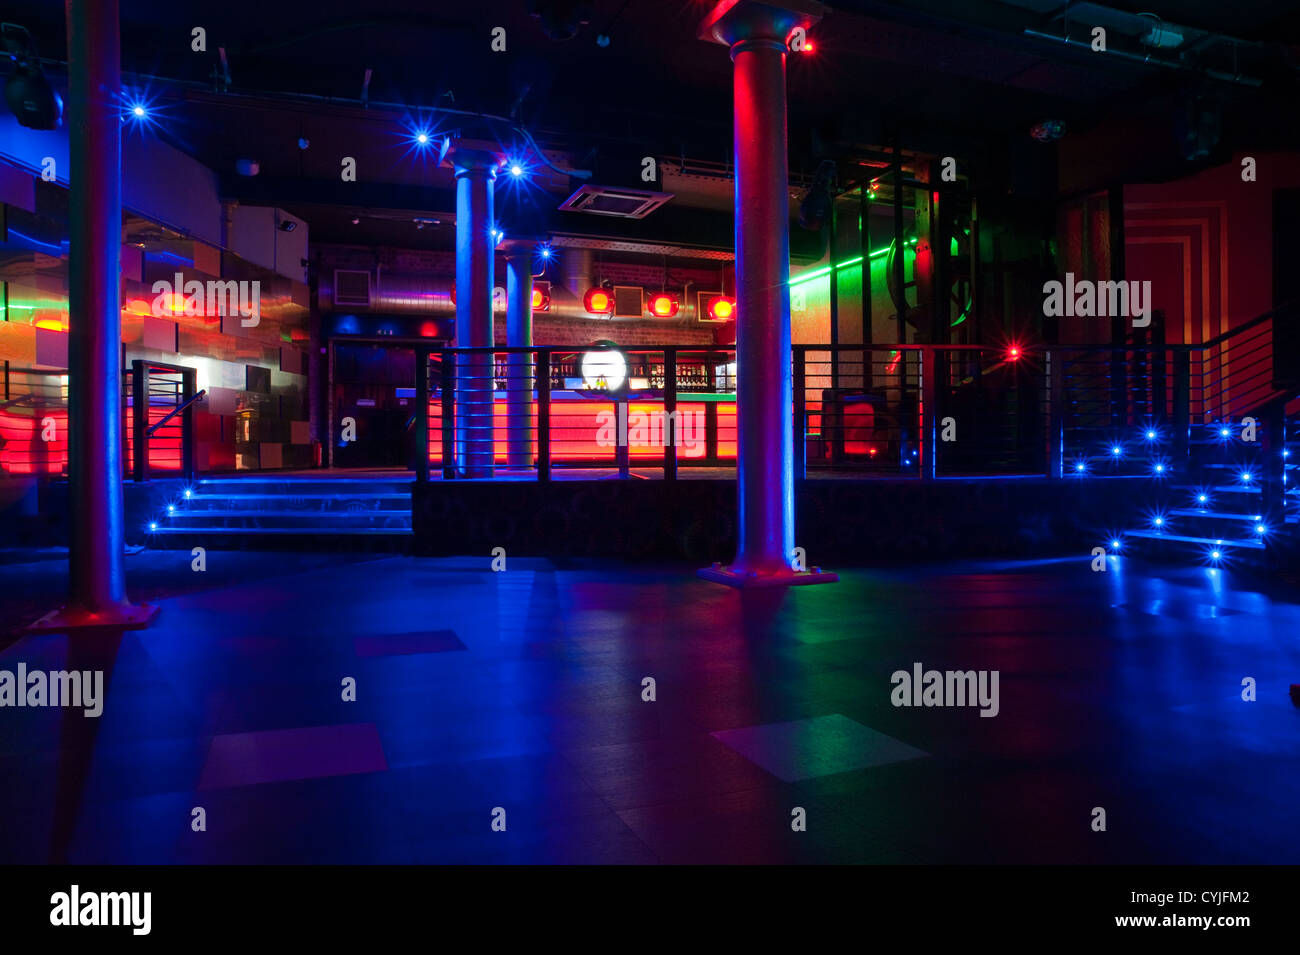 Compartilhar imagens 158+ images interior design for nightclubs - br ...